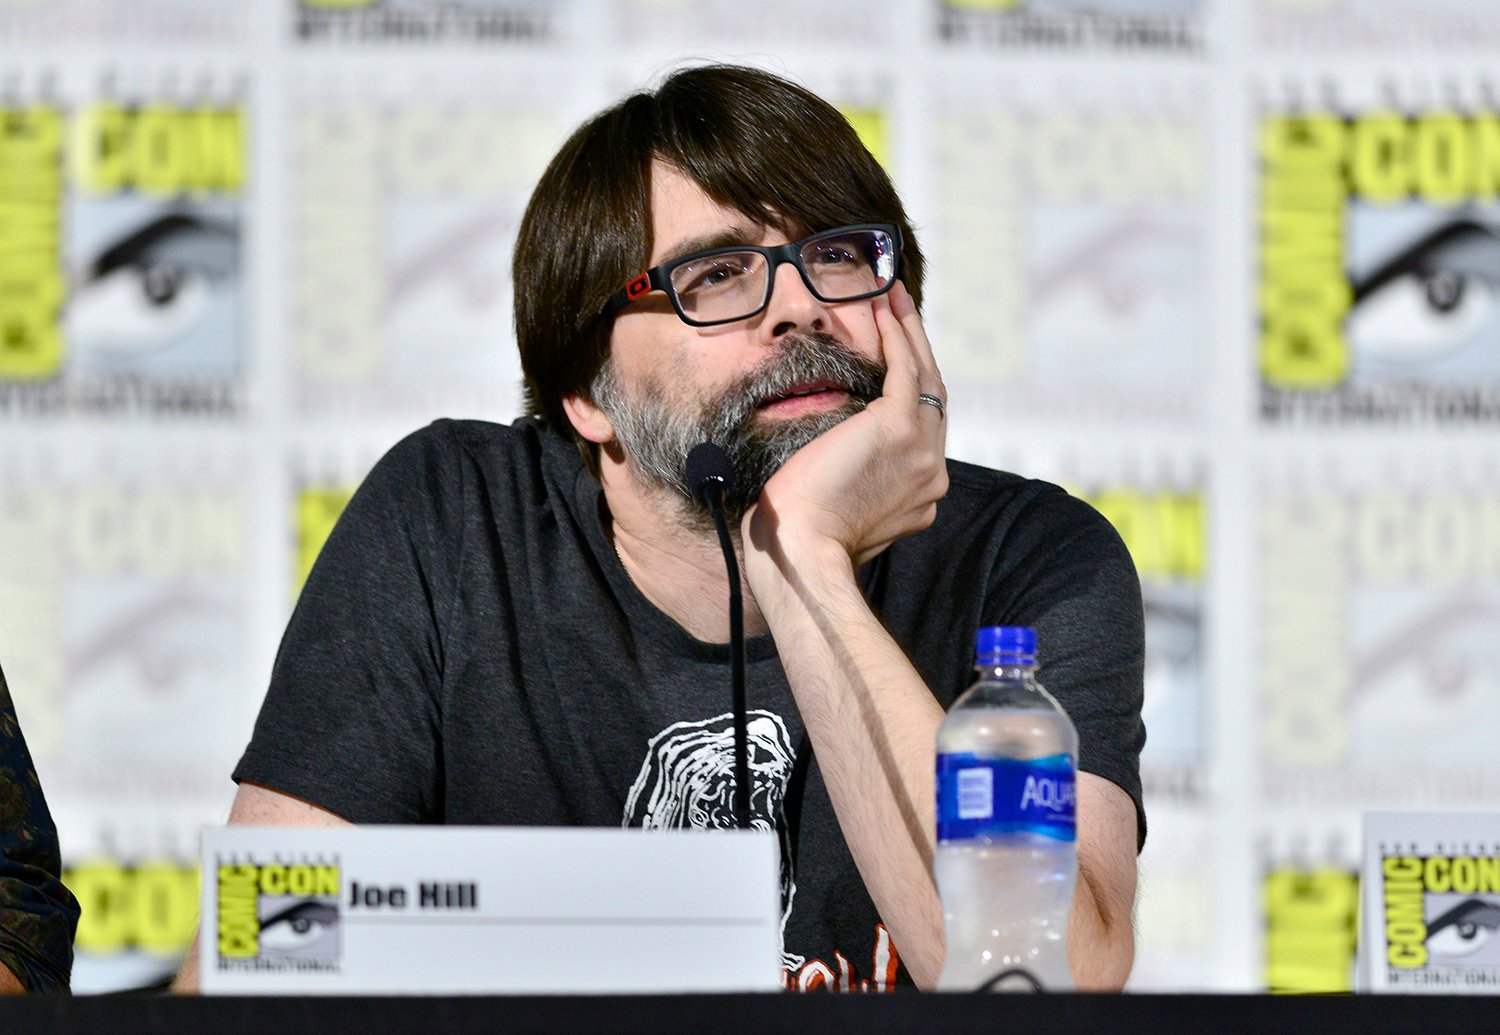 Joe Hill at the Creepshow Panel at Comic Con 2019